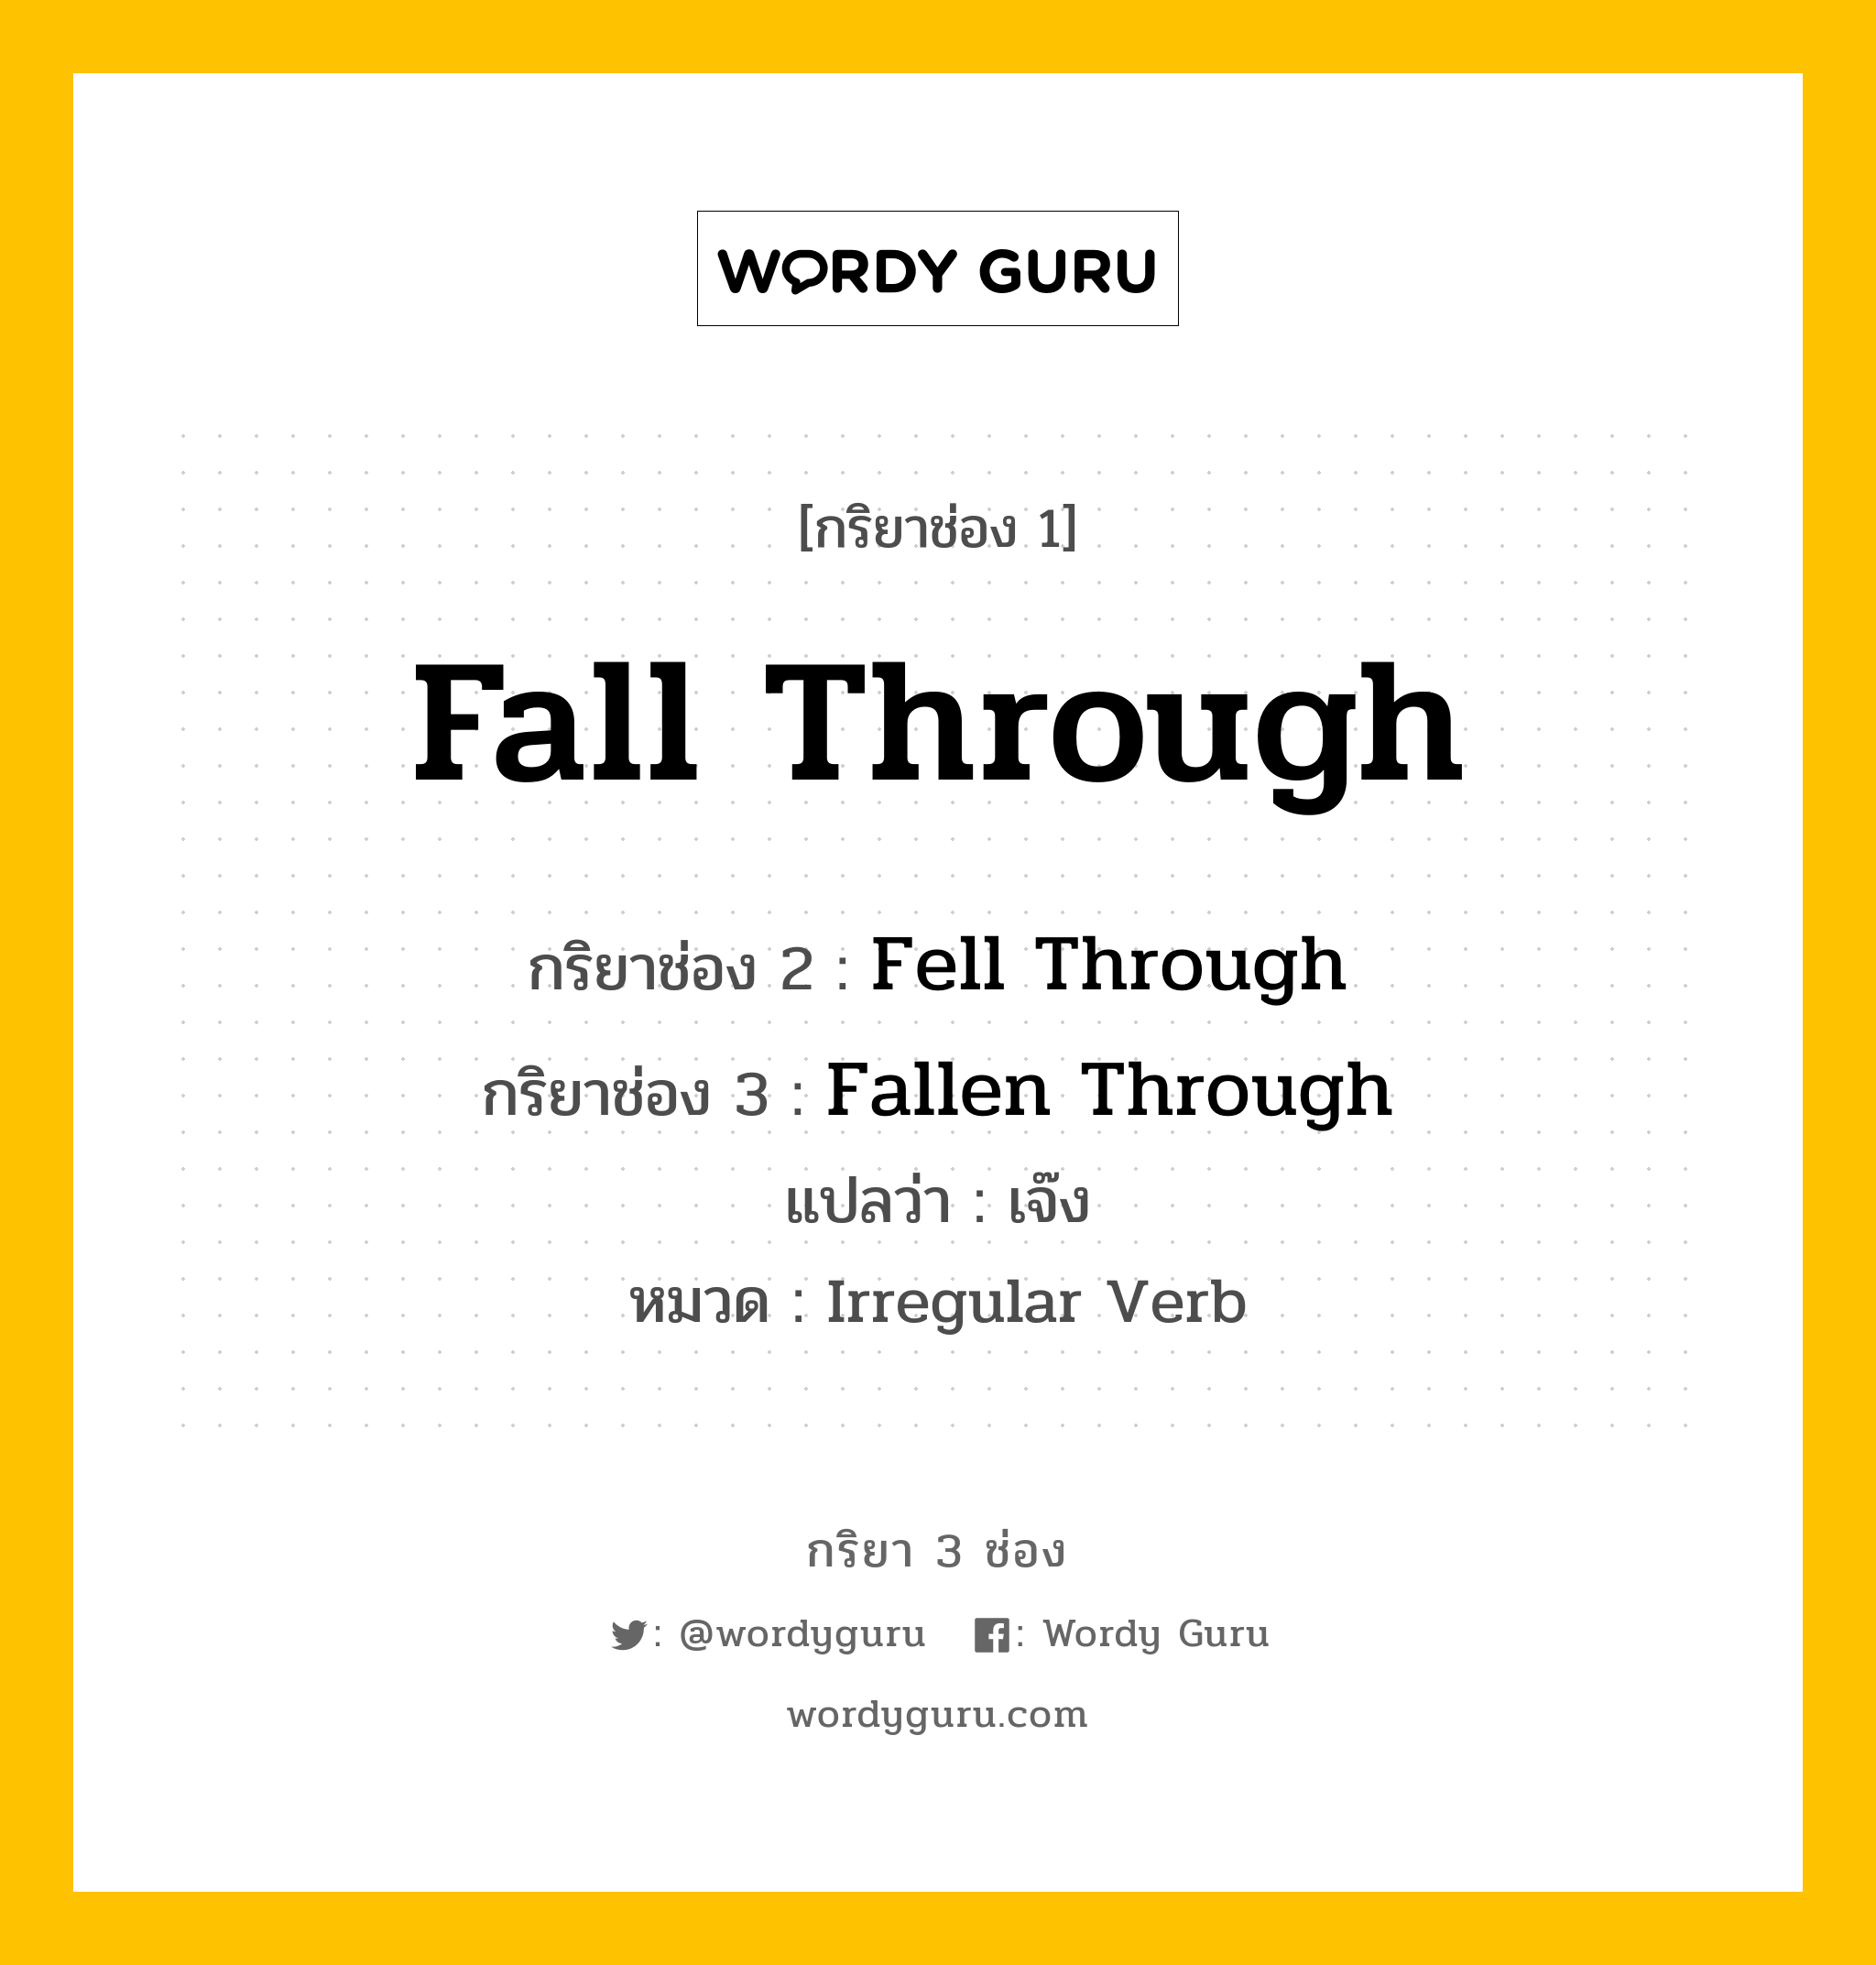 Fall Through มีกริยา 3 ช่องอะไรบ้าง? คำศัพท์ในกลุ่มประเภท Irregular Verb, กริยาช่อง 1 Fall Through กริยาช่อง 2 Fell Through กริยาช่อง 3 Fallen Through แปลว่า เจ๊ง หมวด Irregular Verb หมวด Irregular Verb